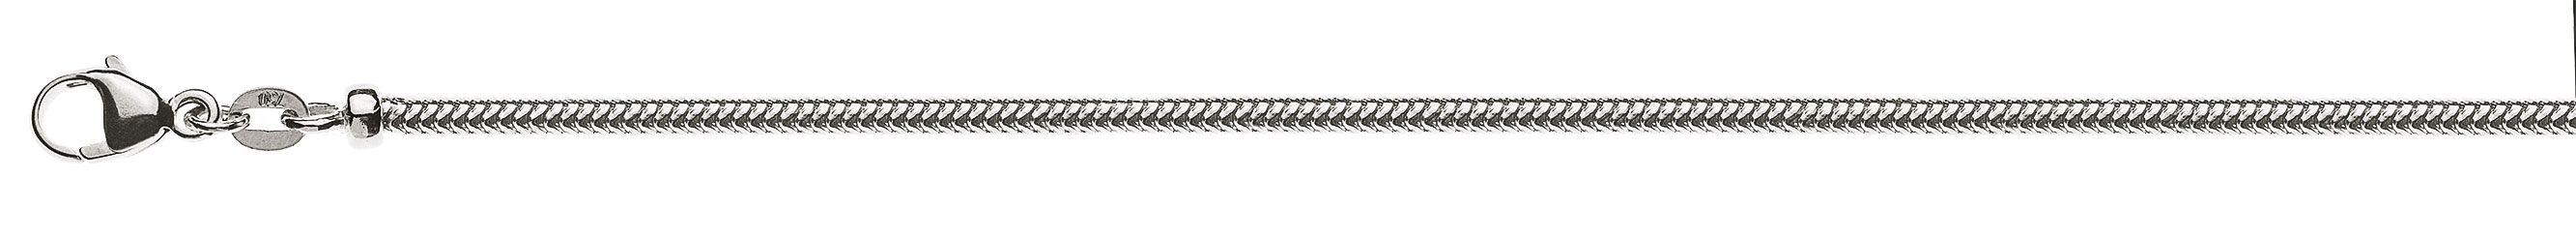 AURONOS Prestige Collier en or blanc 18K, chaîne serpent 50cm 2.4mm